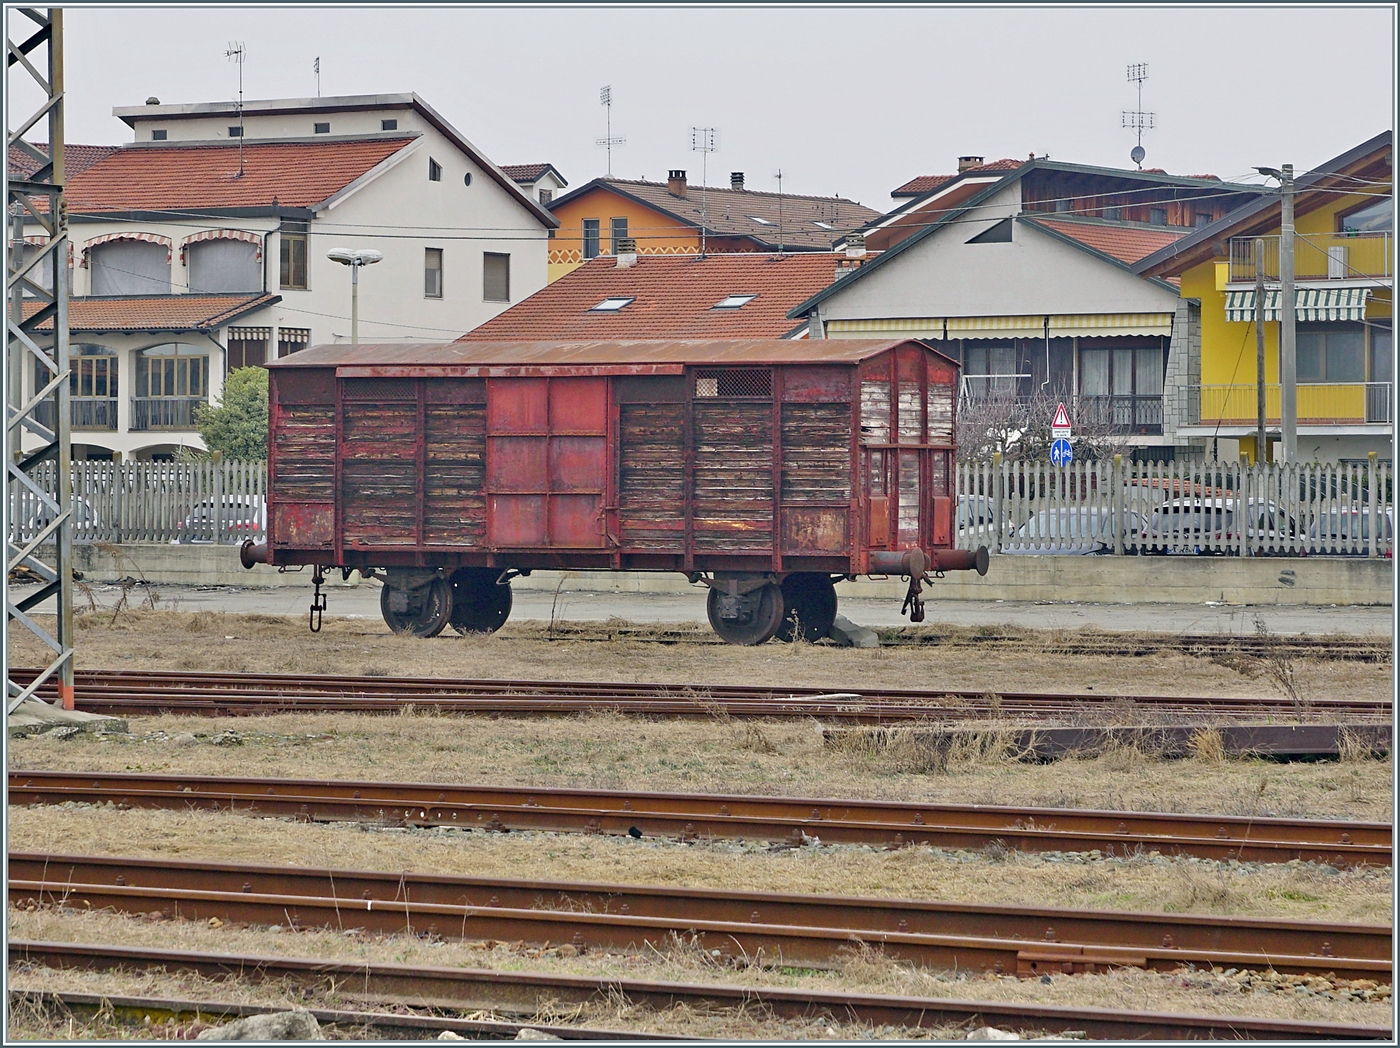 Ein alter, wohl sehr alter  Spitzdach -Güterwagen steht in Chivasso. Erste Wagen dieser Bauart sollen bereits 1857 erbaut worden sein. In den nördlichen Breitengraden wurden diese Wagen aus Italien meist für Lebensmitteltransporte aus dem Süden eingesetzt. 

24. Februar 2023